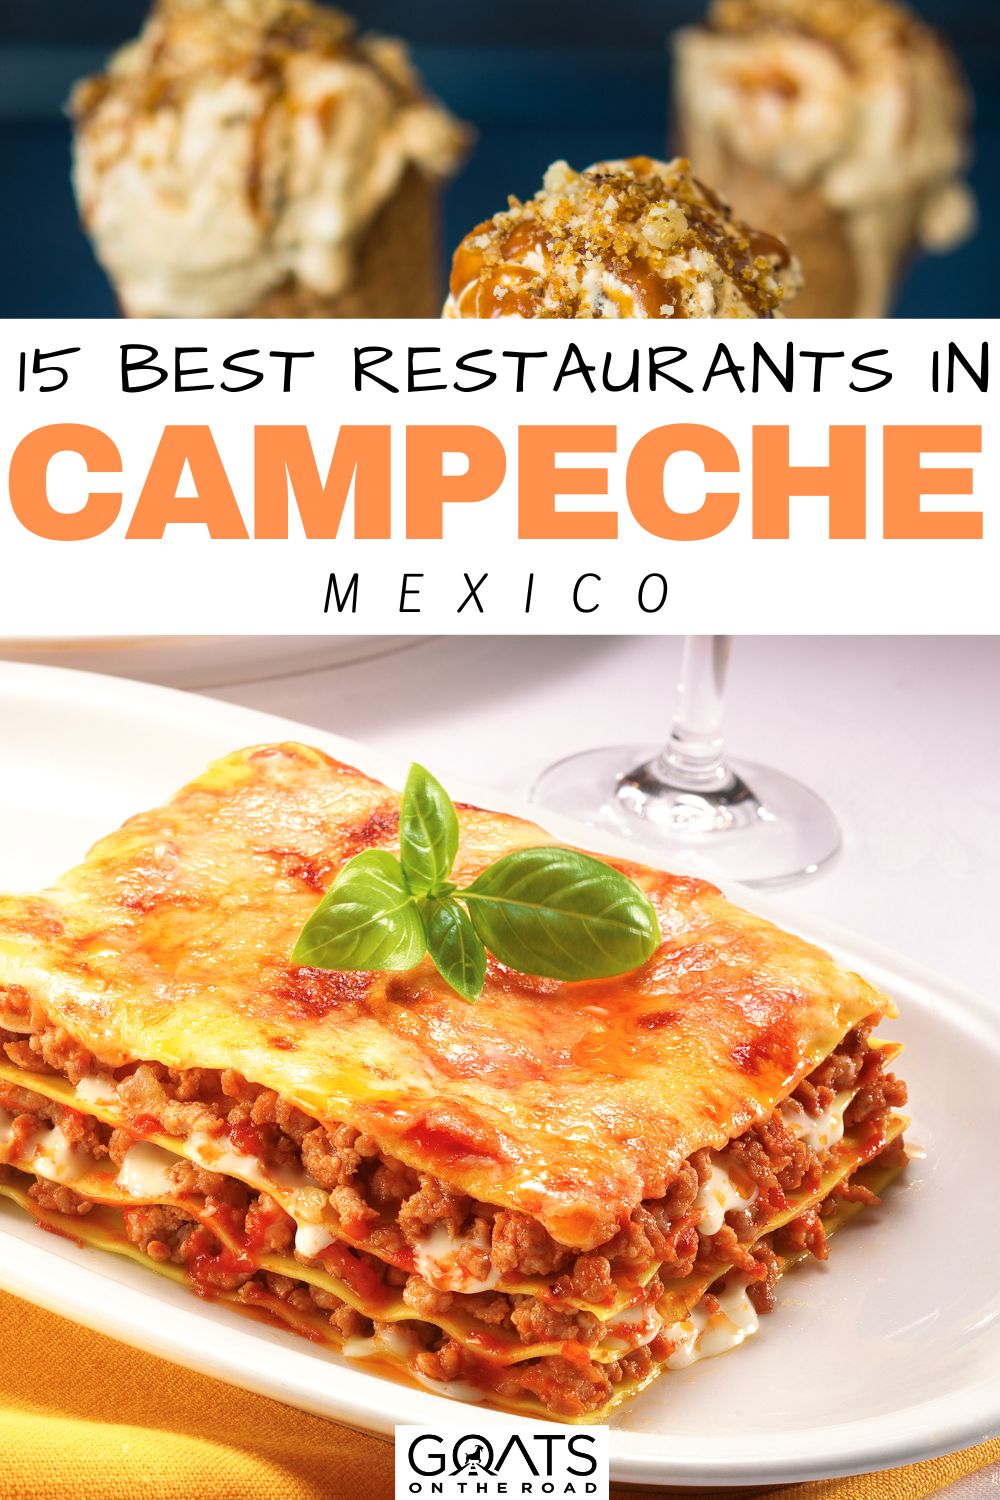 “15 Best Restaurants in Campeche, Mexico